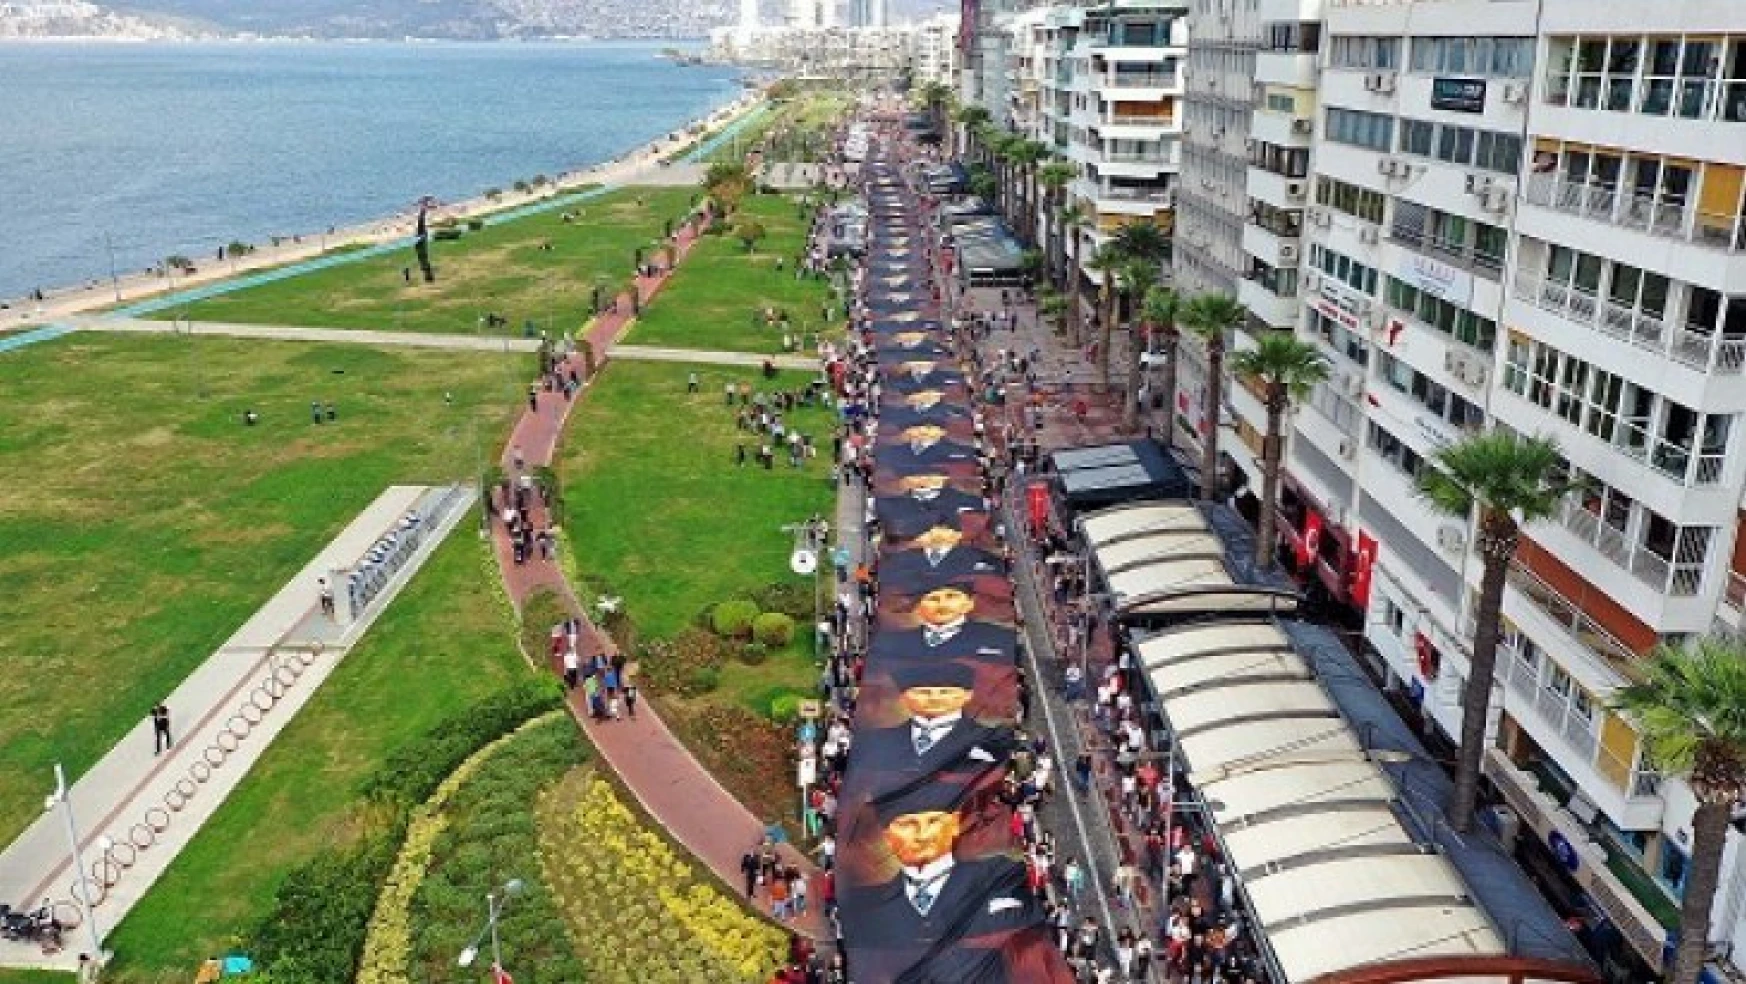 İzmir Atatürk'e Saygı Yürüyüşü'nde buluştu